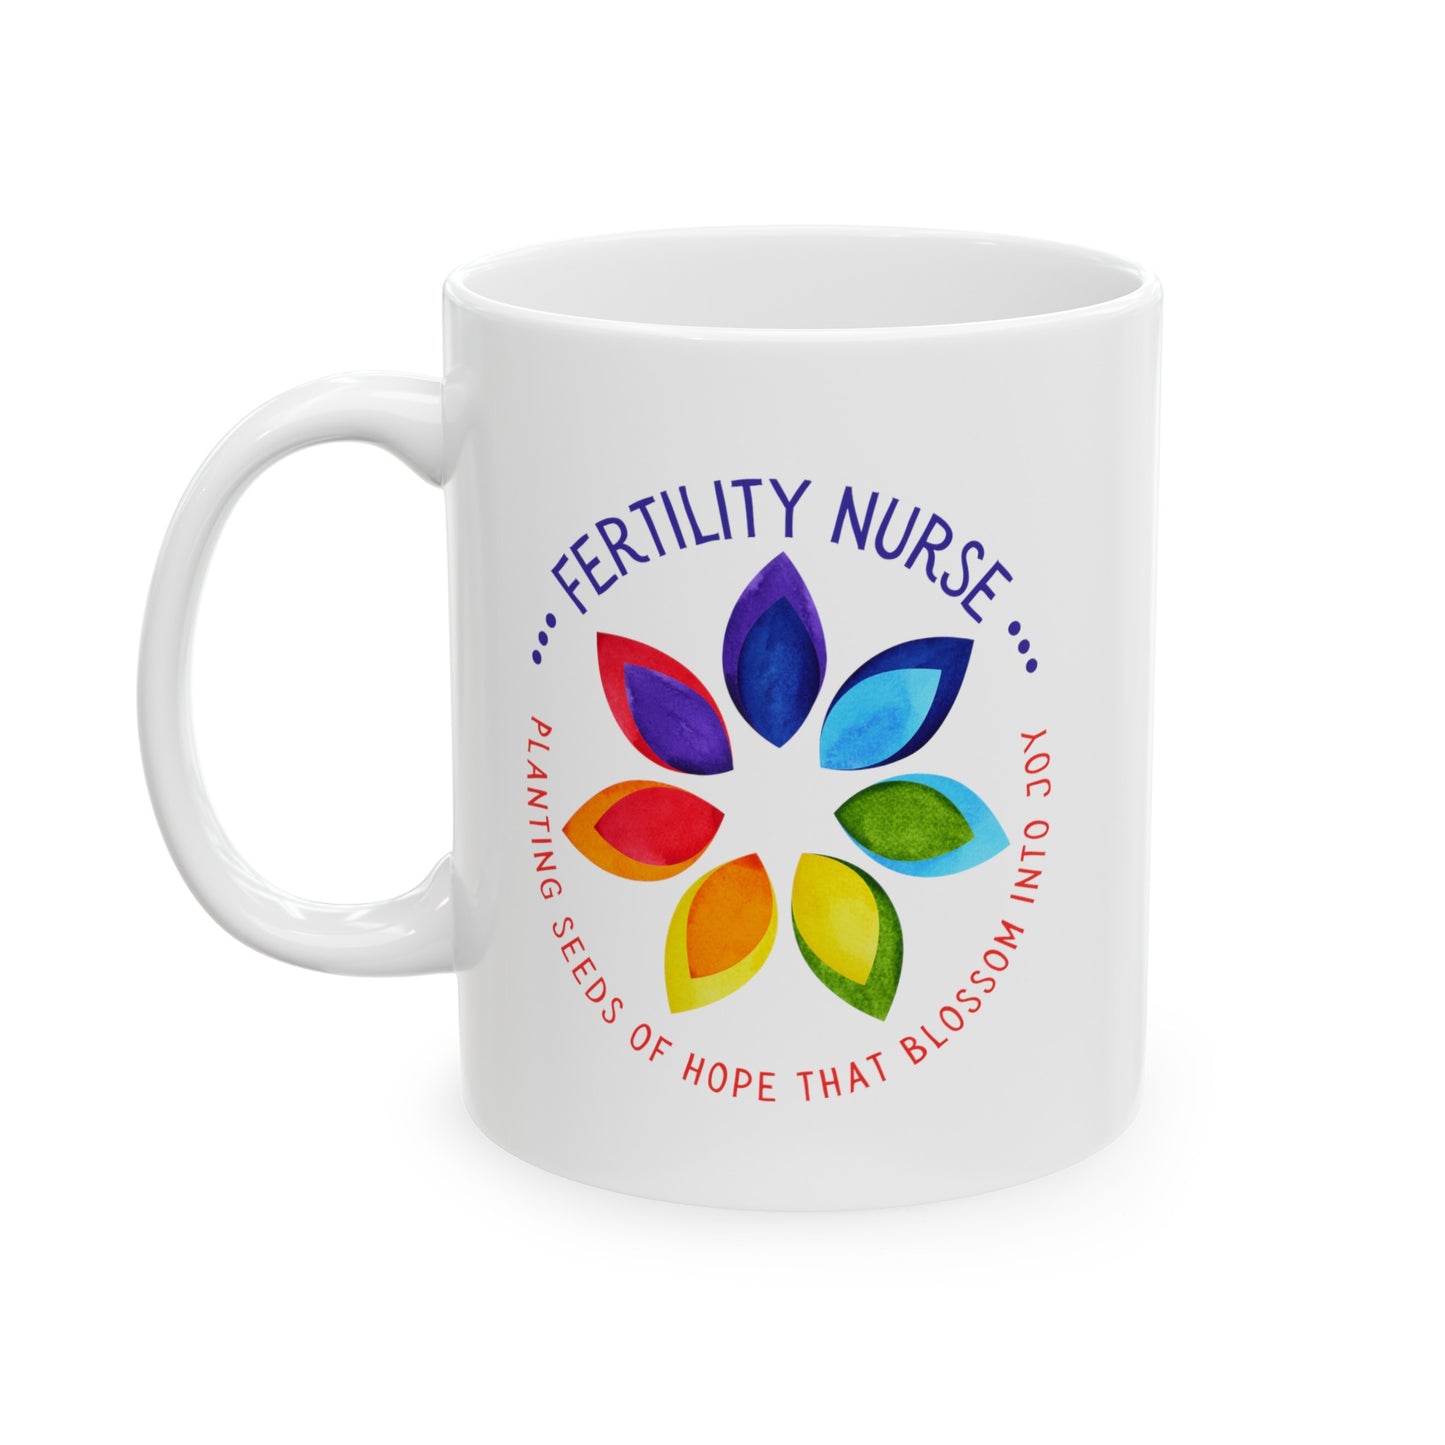 Fertility Nurse "Seeds of Hope" White Glossy Mug Front